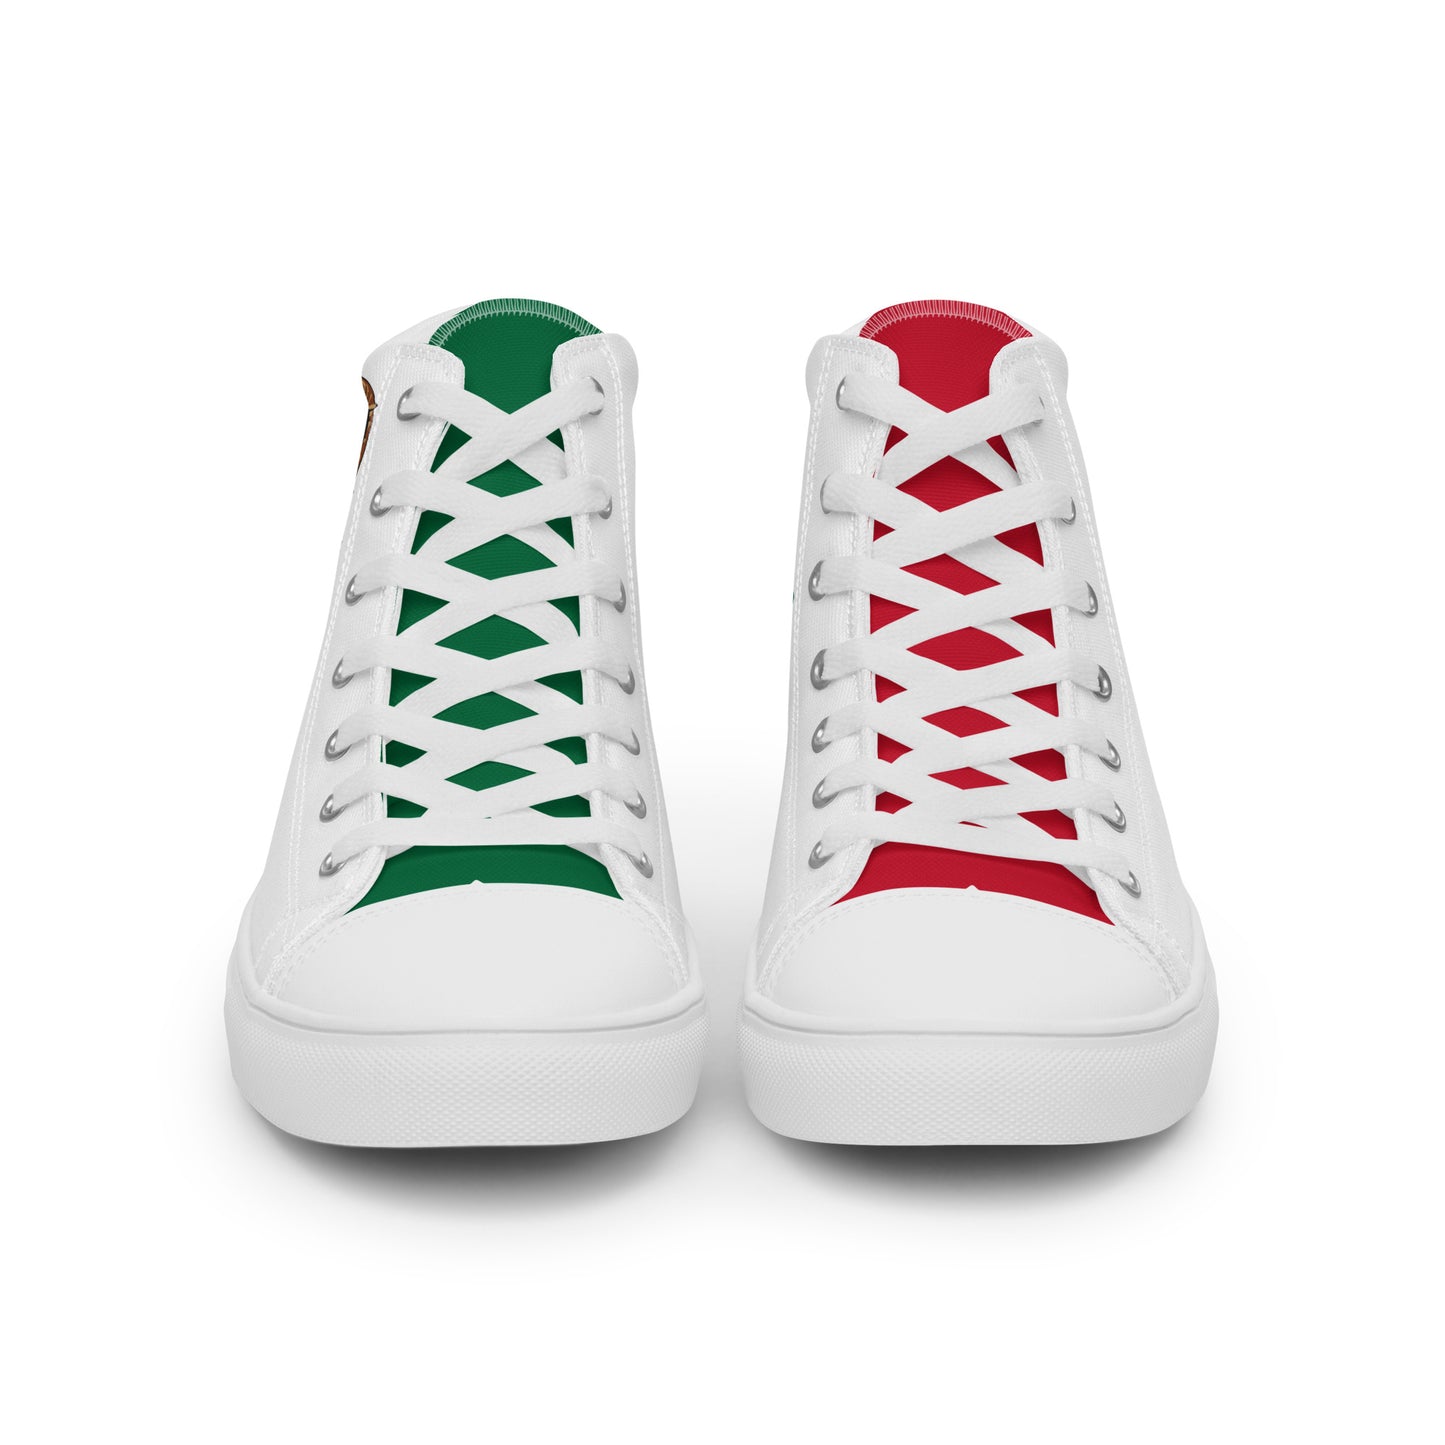 México - Men - White - High top shoes